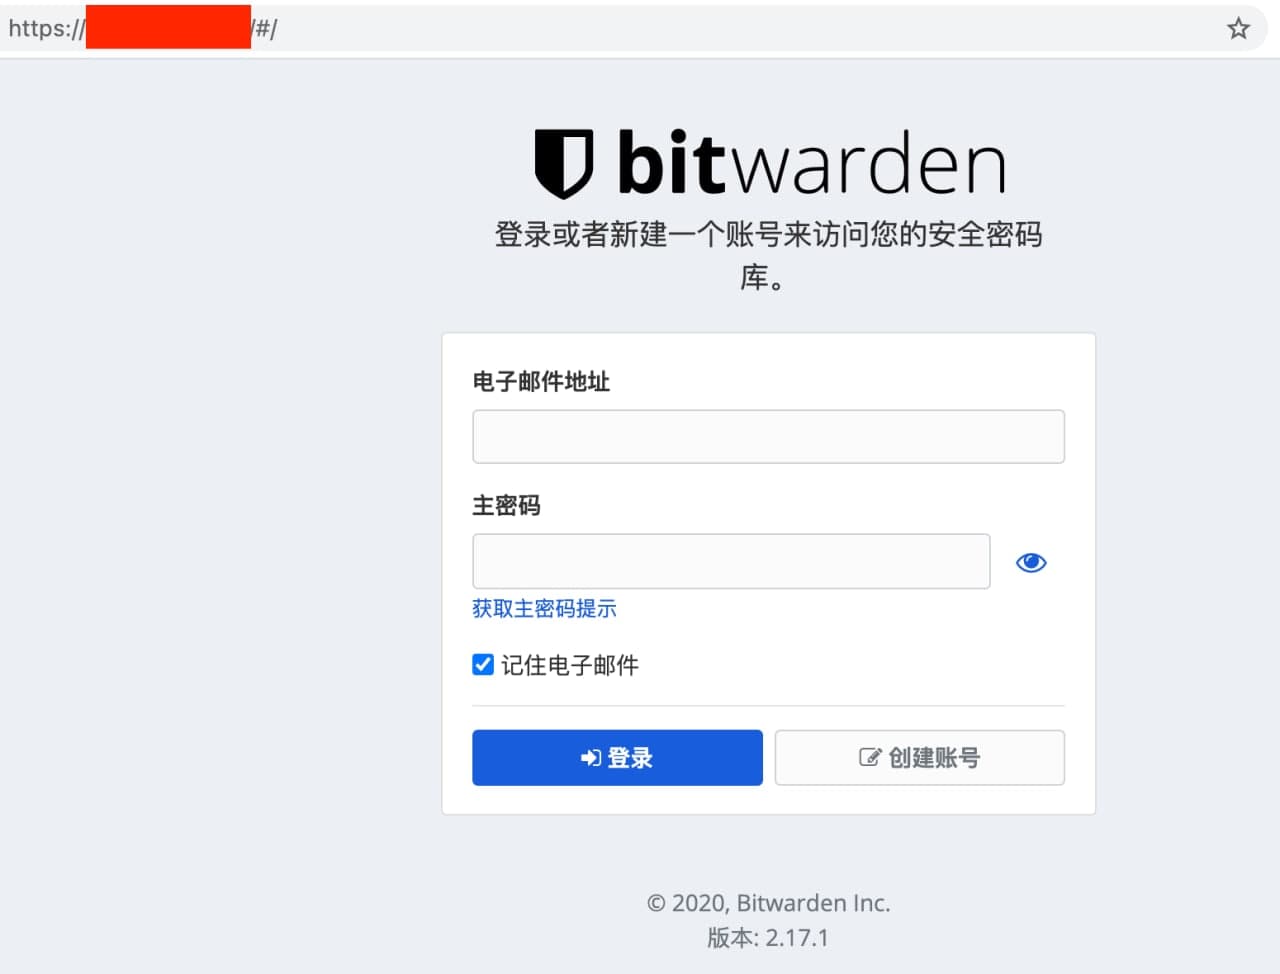 bitwarden_web_page